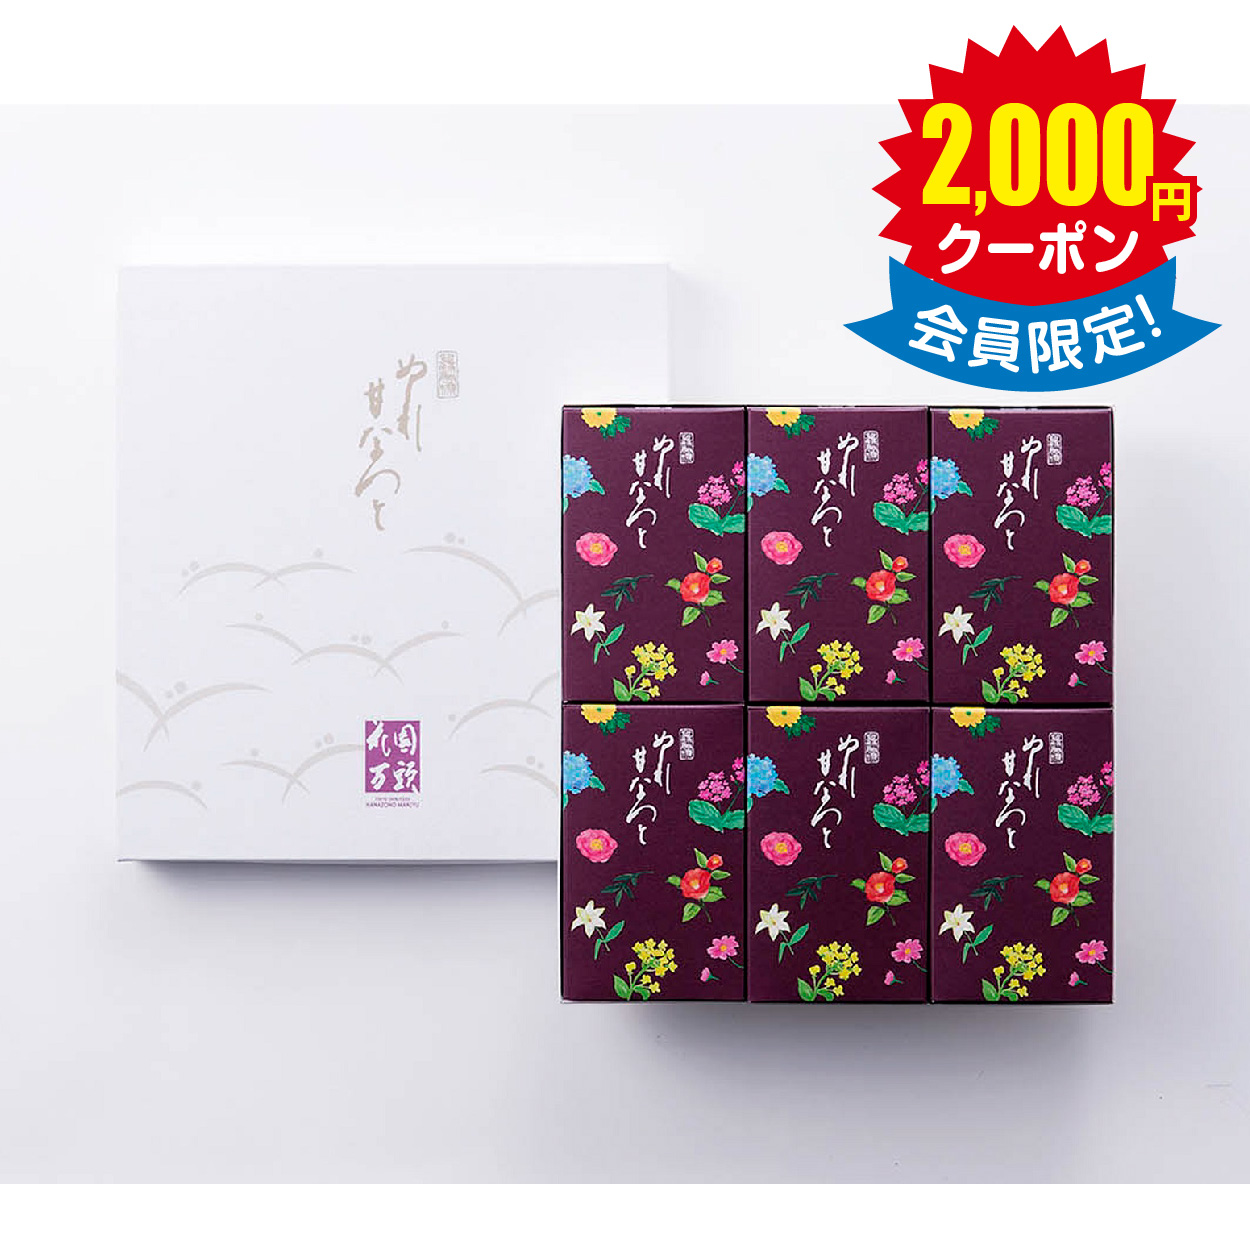 東京・新宿 「花園万頭」 ぬれ甘なつと小箱(6個入) × 10箱